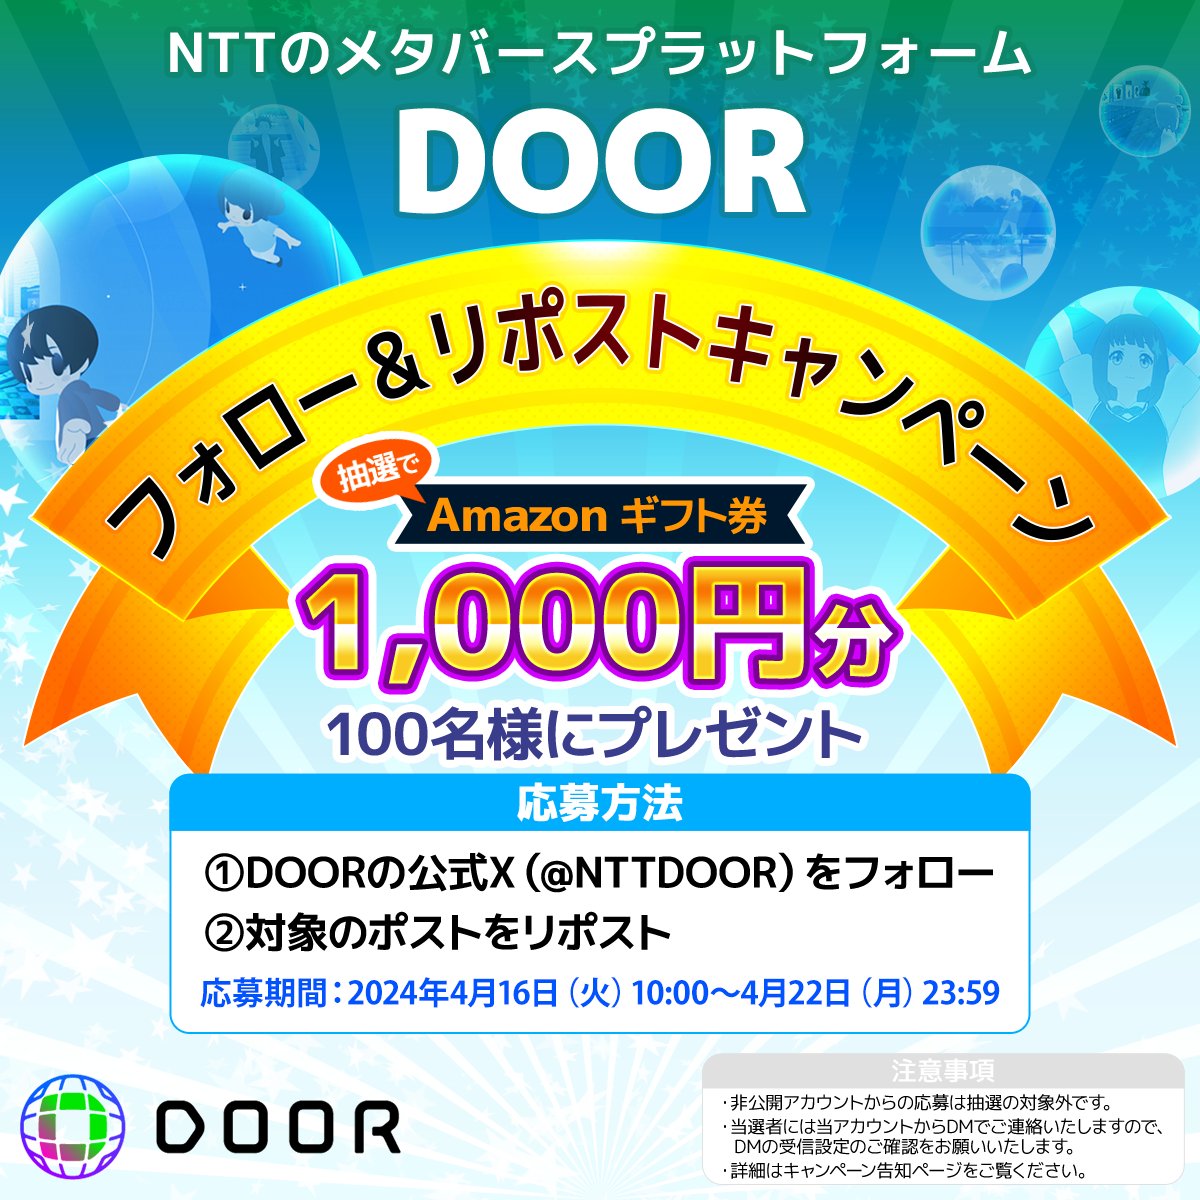 NTTコノキューのメタバースプラットフォーム「DOOR」
🌸公式Xフォロー＆リポストキャンペーン🌸
／
抽選で100名様に1,000円分のAmazonギフトカードをプレゼント🎁
＼

応募方法📷
📷@NTTDOORをフォロー
📷本投稿をリポスト

開催期間：
2024/4/16（火）10:00～2024/4/22(月)23:59まで

詳細はこちら⏩